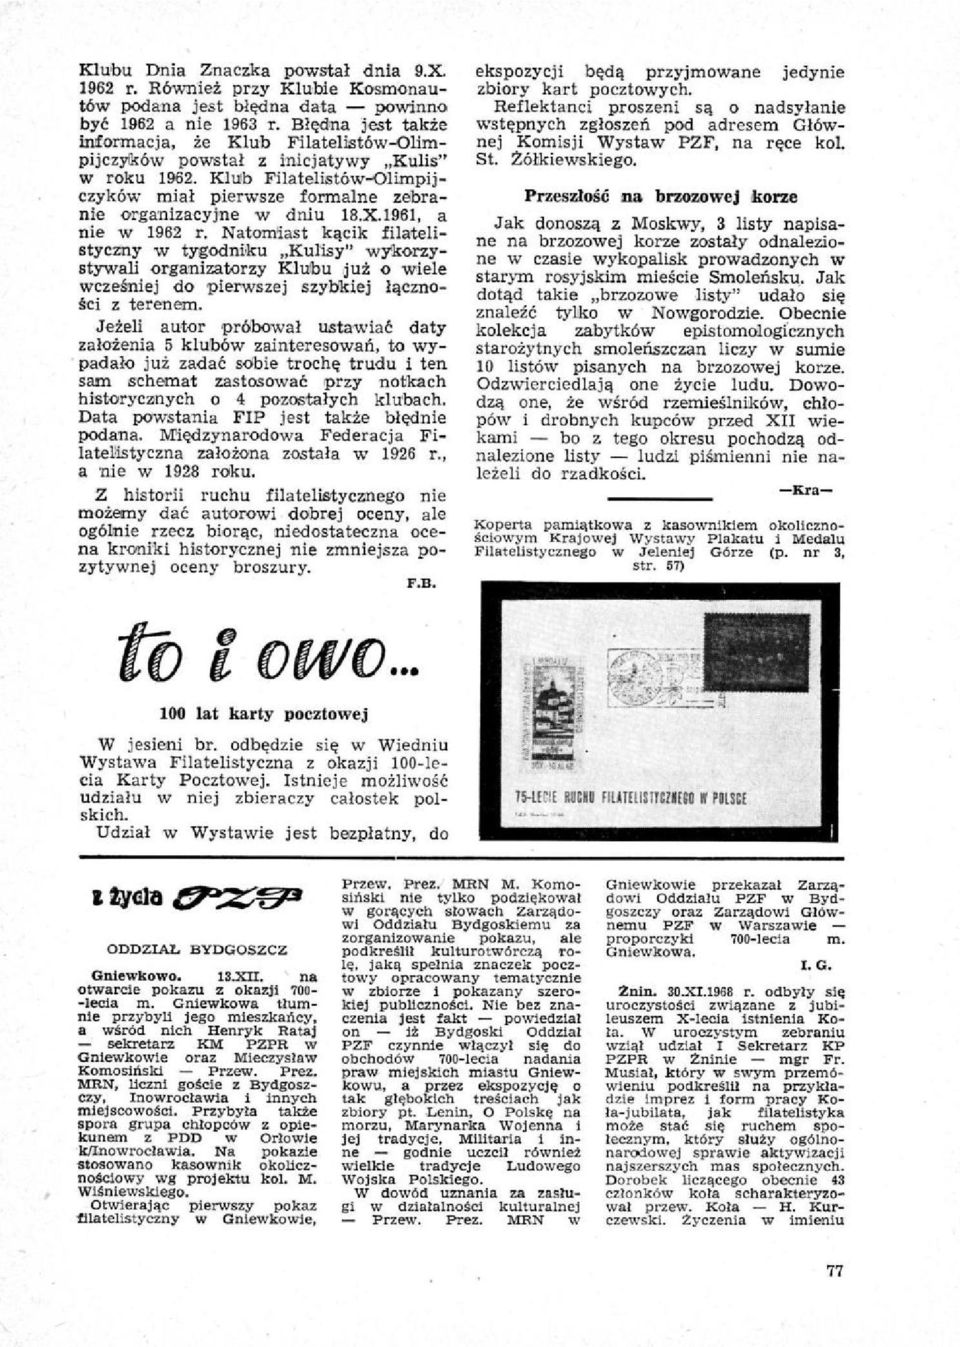 1961, a nie w 1962 r. Natomiast kącik filatelistyczny w tygodniku Kulisy" wykorzystywali organizatorzy Klubu już o wiele wcześniej do pierwszej szybkiej łączności z terenem.